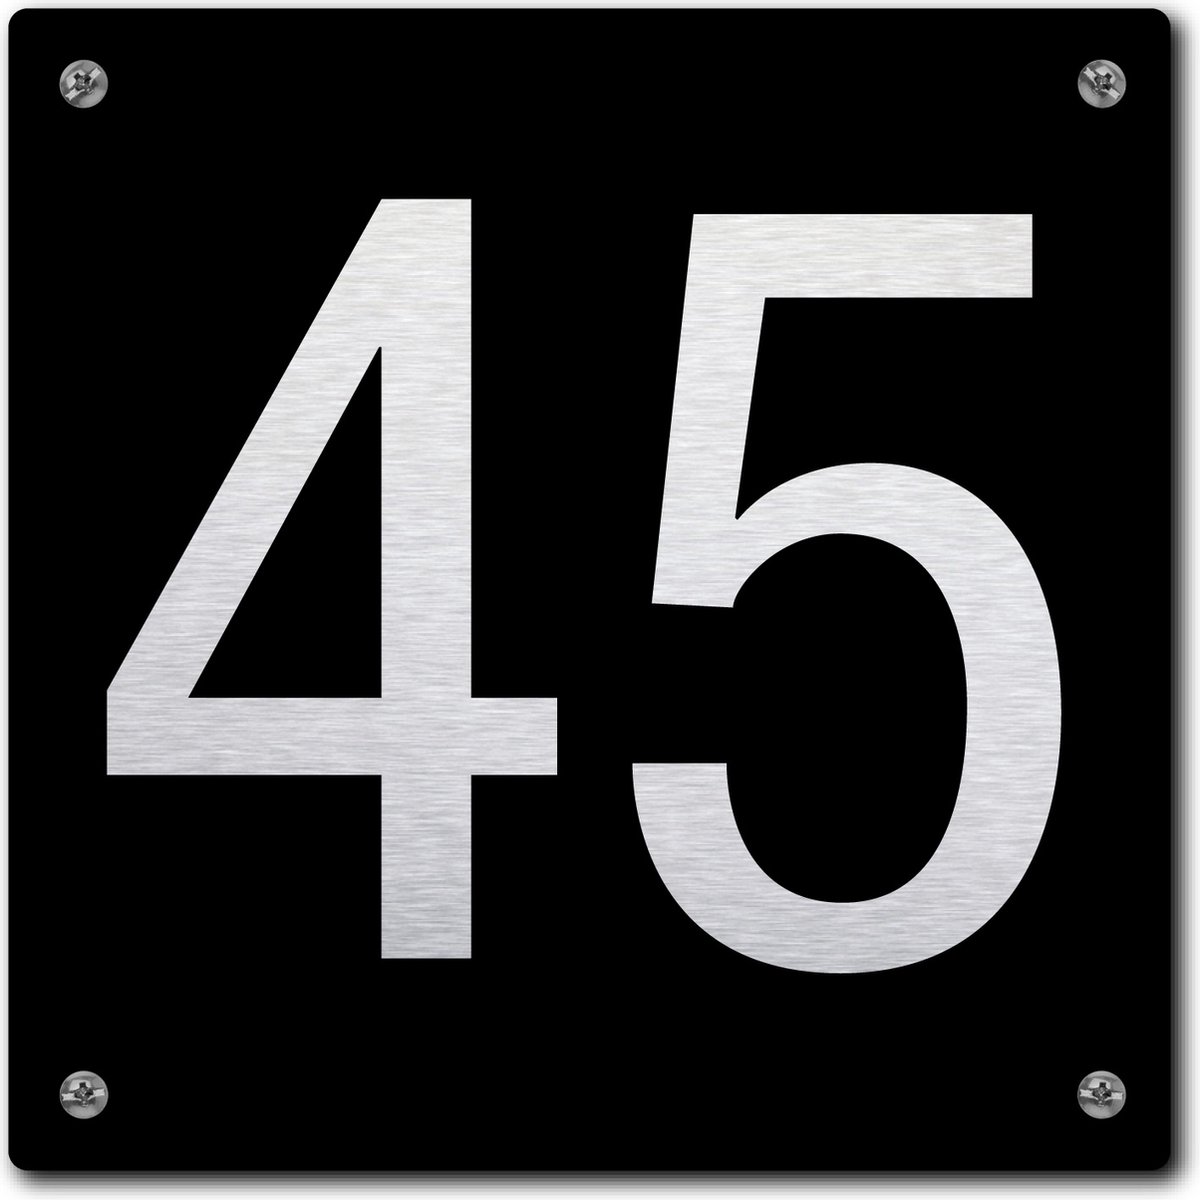 Huisnummerbord - huisnummer 45 - zwart - 12 x 12 cm - rvs look - schroeven - naambordje - nummerbord - voordeur